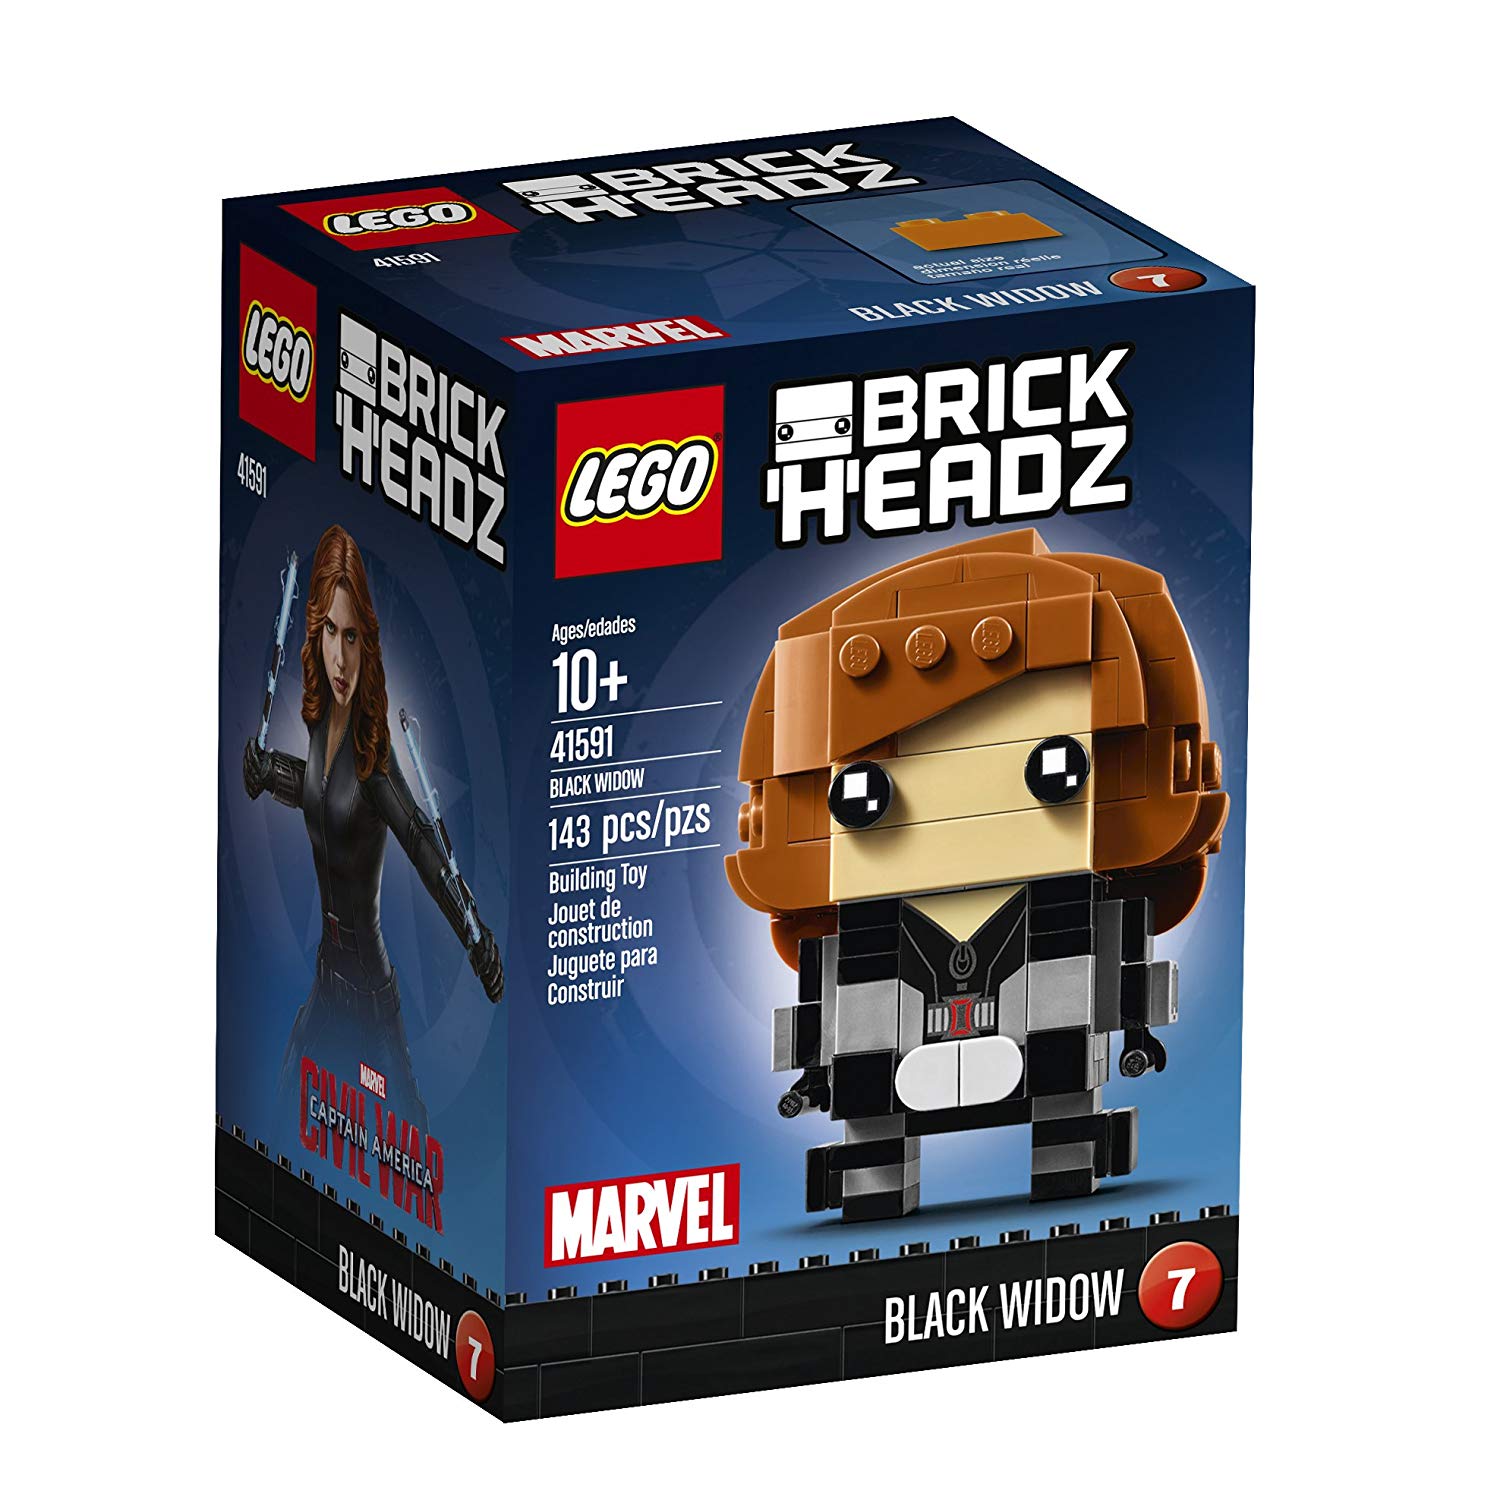 Lego Brickheadz Black Widow